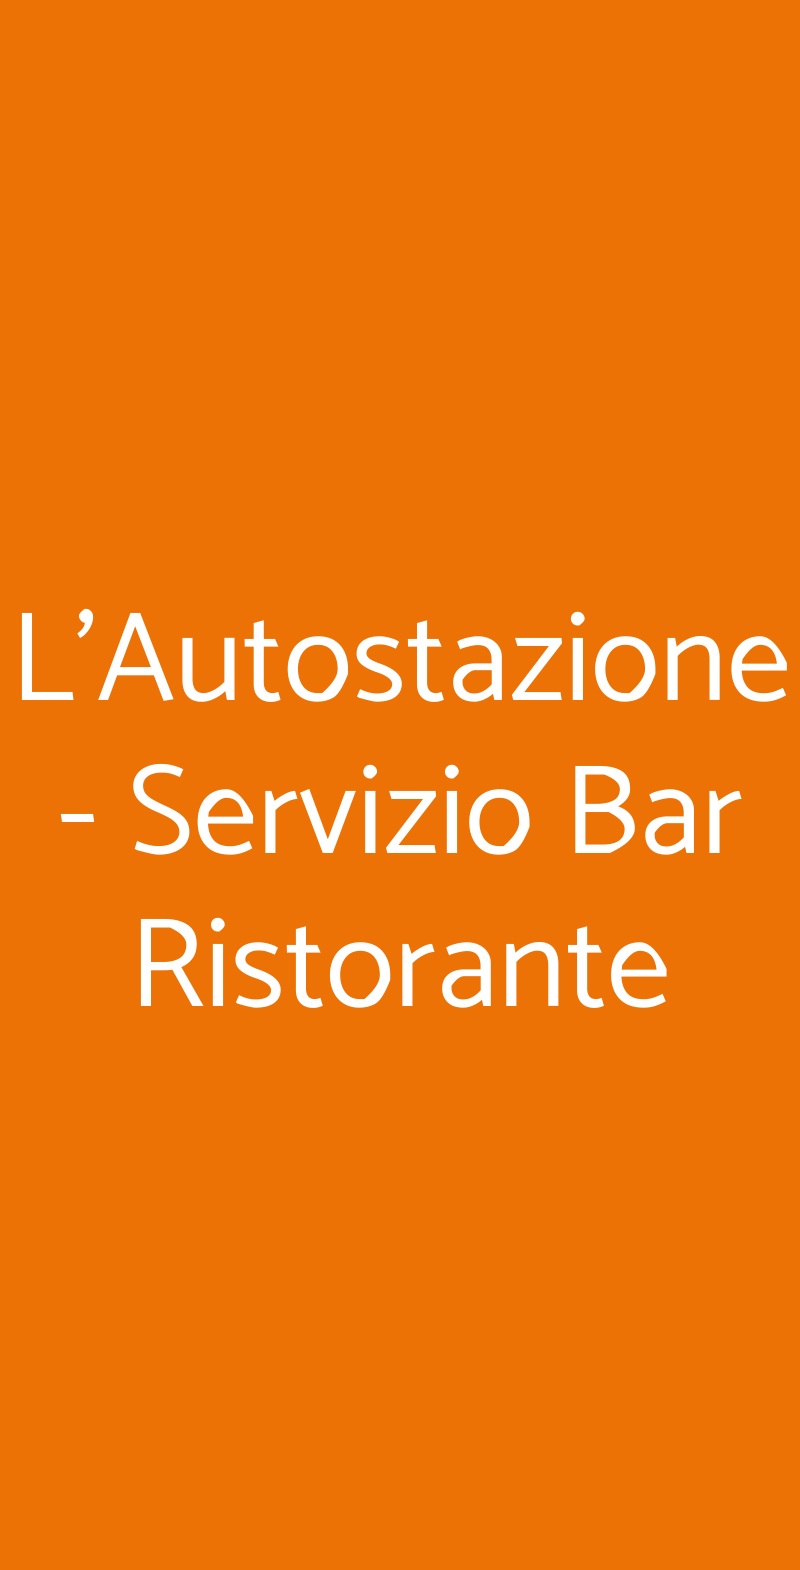 L'Autostazione - Servizio Bar Ristorante Cittadella menù 1 pagina